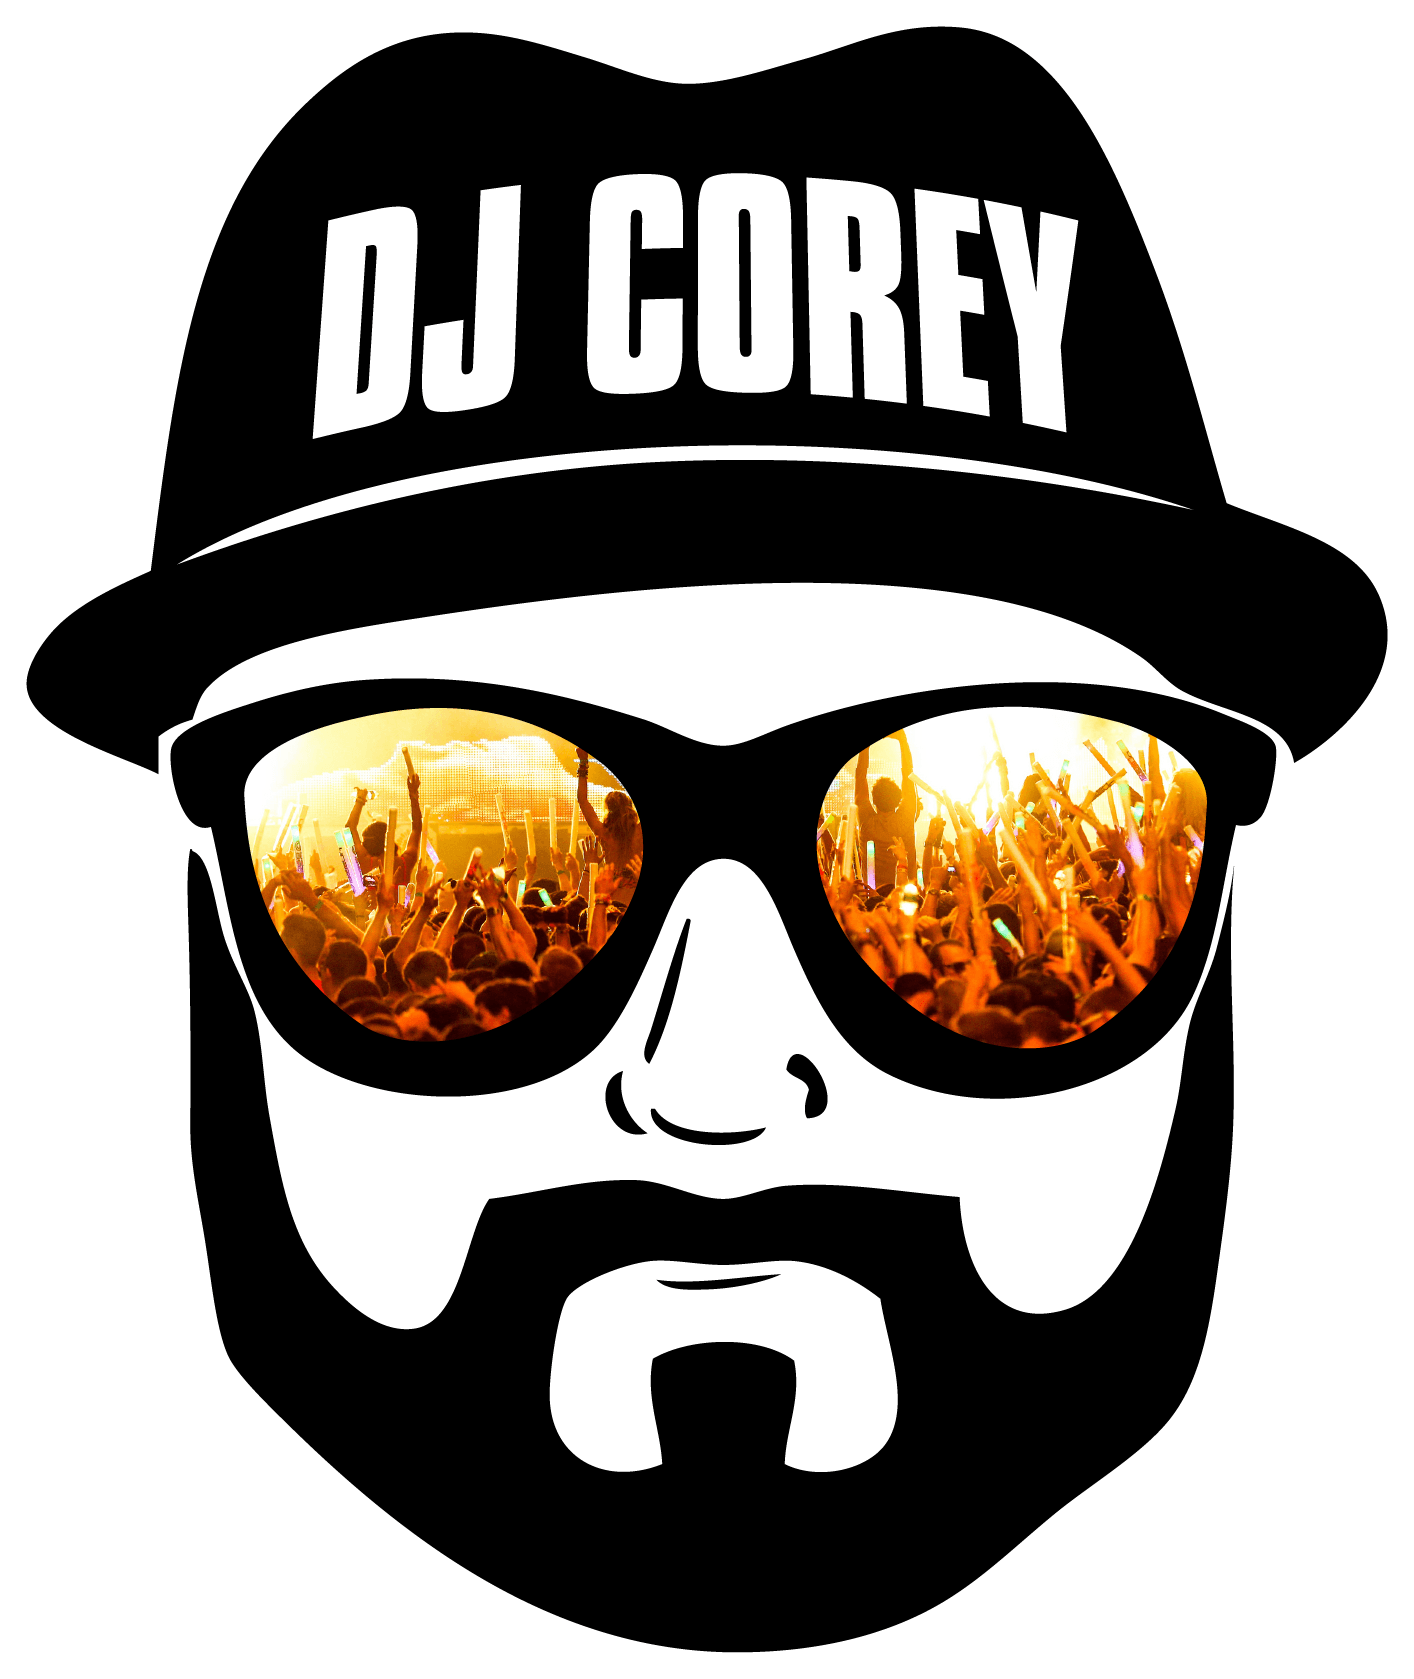 Corey Logo - Pricing